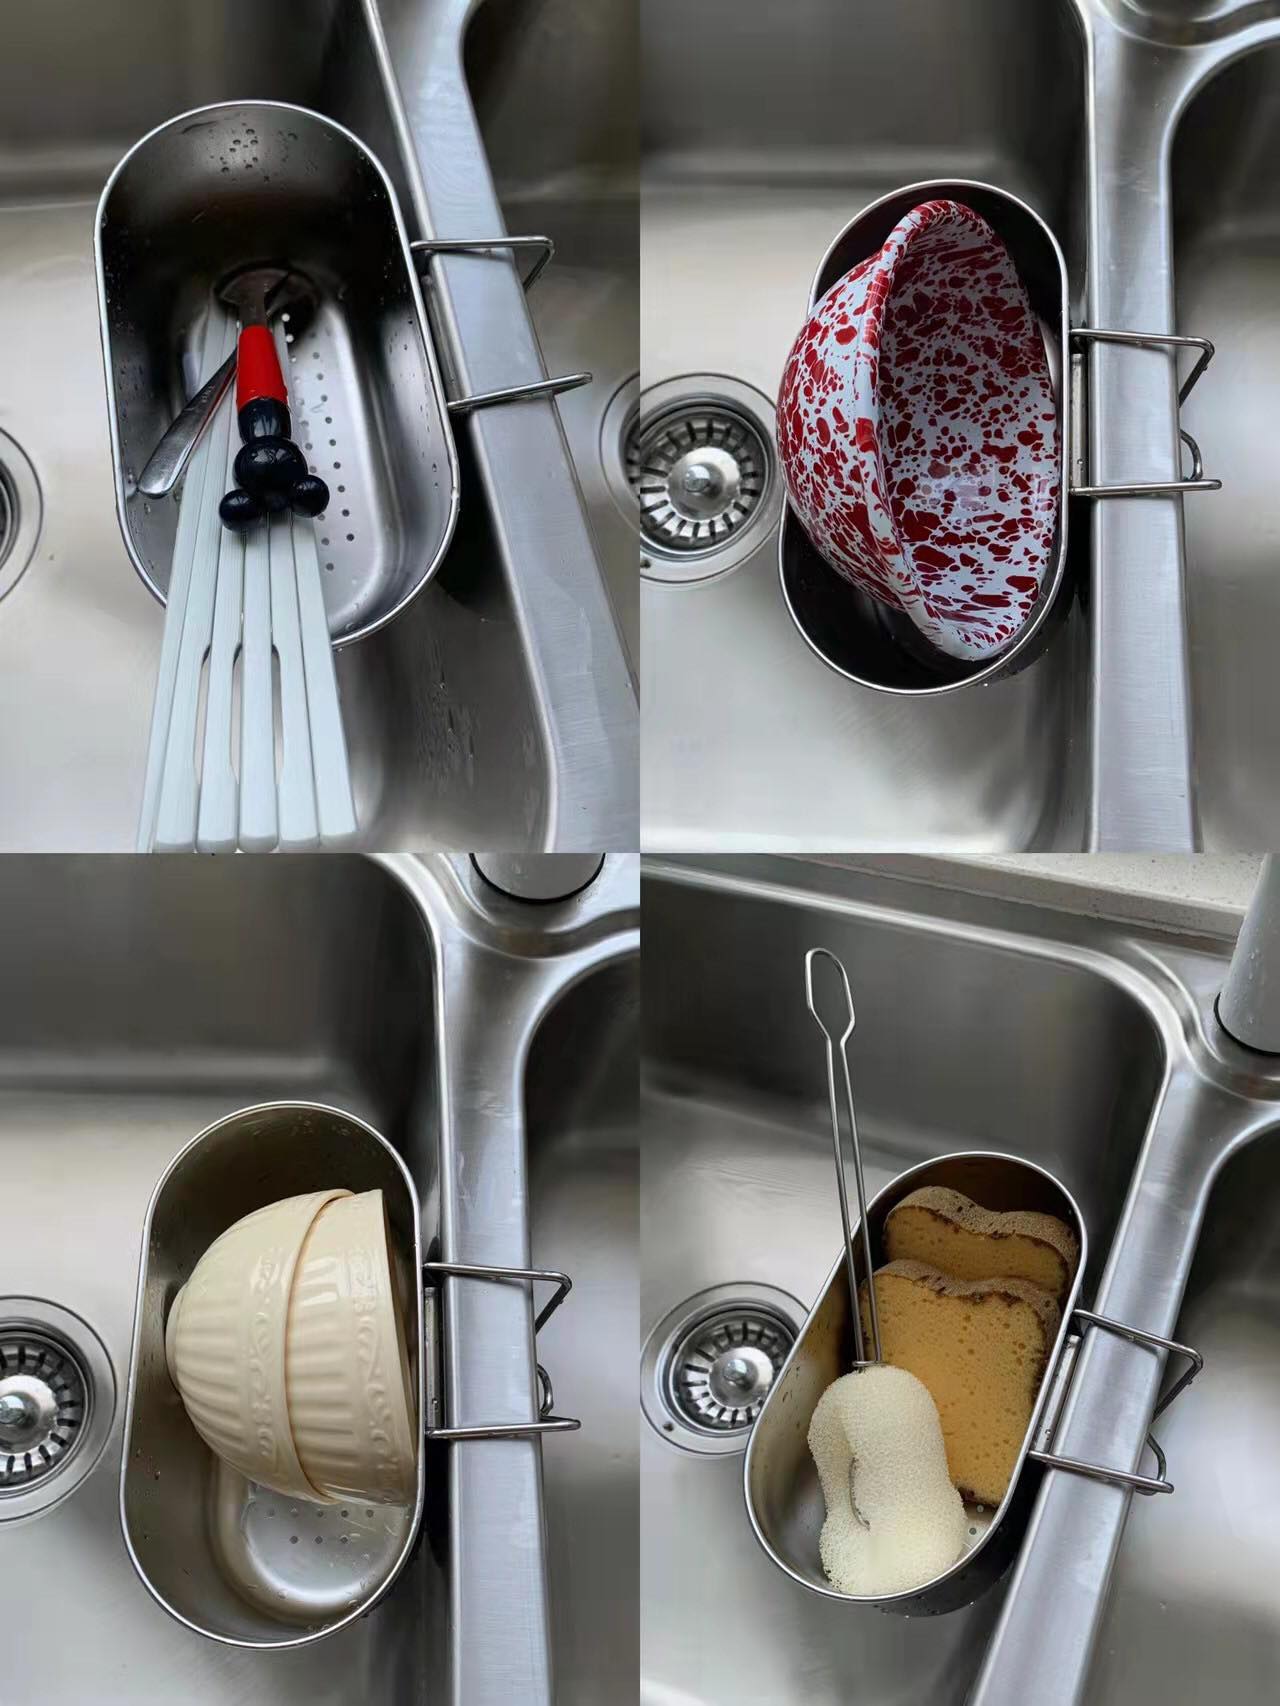 Khay lọc rác bồn rửa chén ngăn tắc bồn rửa,không ghê tay | Khay đựng dụng cụ rửa chén chất liệu INOX 304 siêu bền,chống hoen gỉ